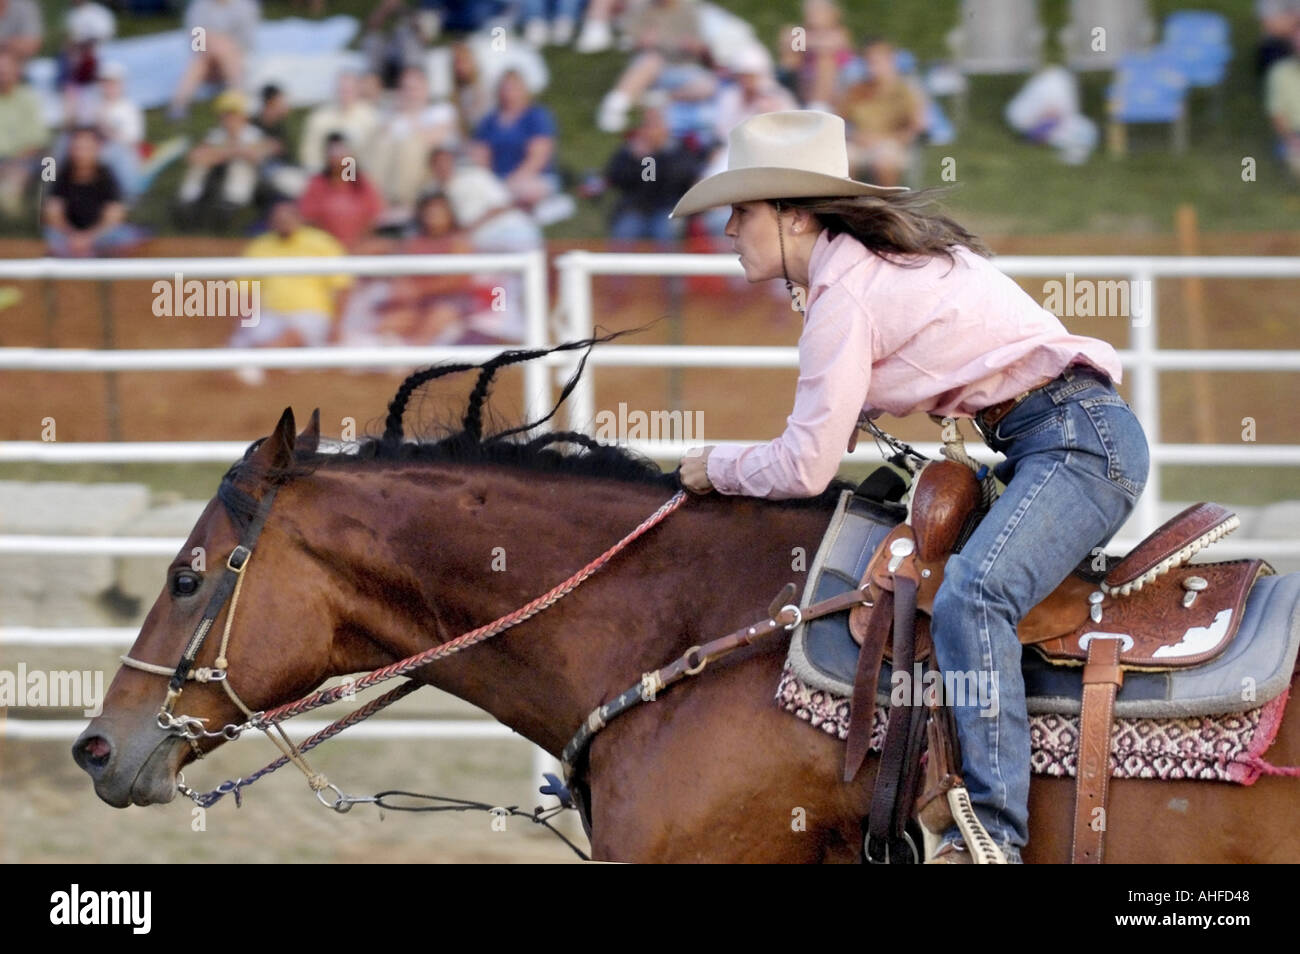 Weibchen konkurrieren im Rodeo-Lauf-Wettbewerb Stockfoto